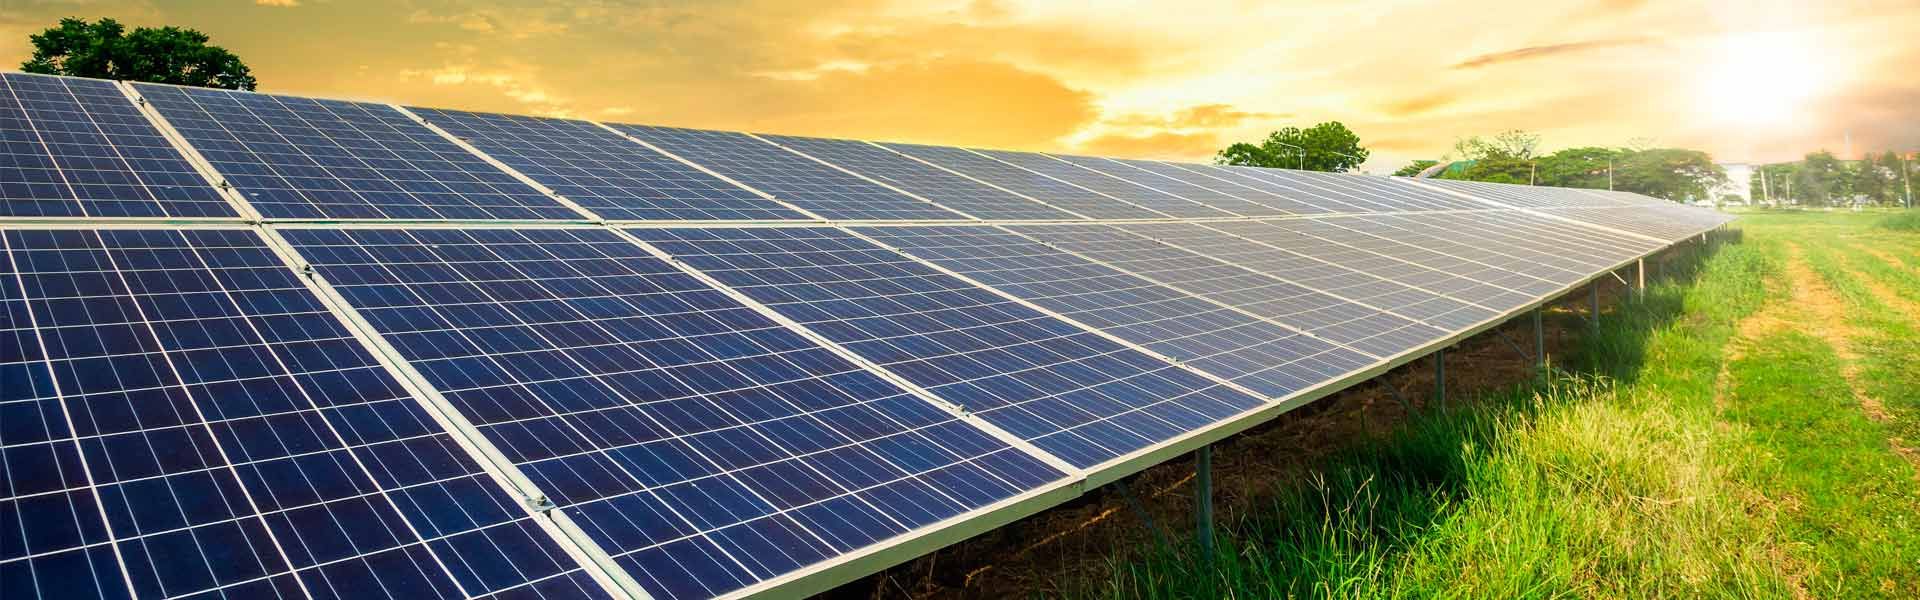 Pannelli solari e fotovoltaici per privati, condomini e aziende